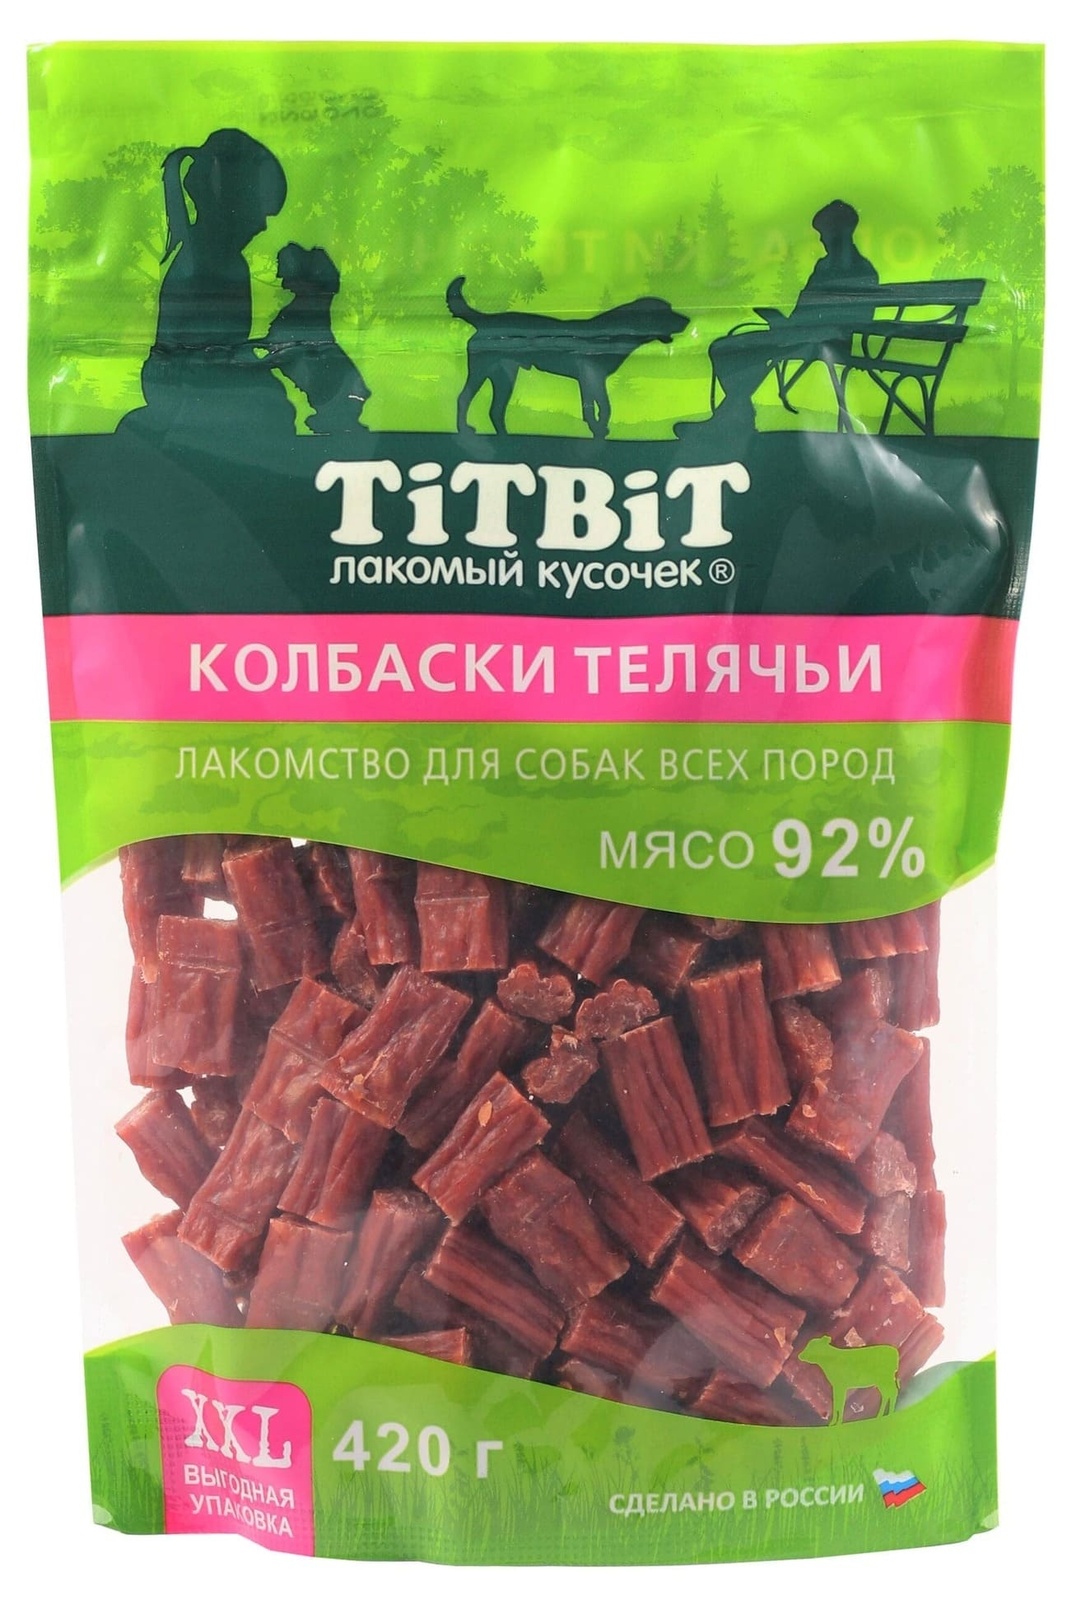 TiTBiT TiTBiT колбаски телячьи для собак всех пород, выгодная упаковка XXL (420 г) лакомство для собак titbit колбаски миланские 370г xxl выгодная упаковка